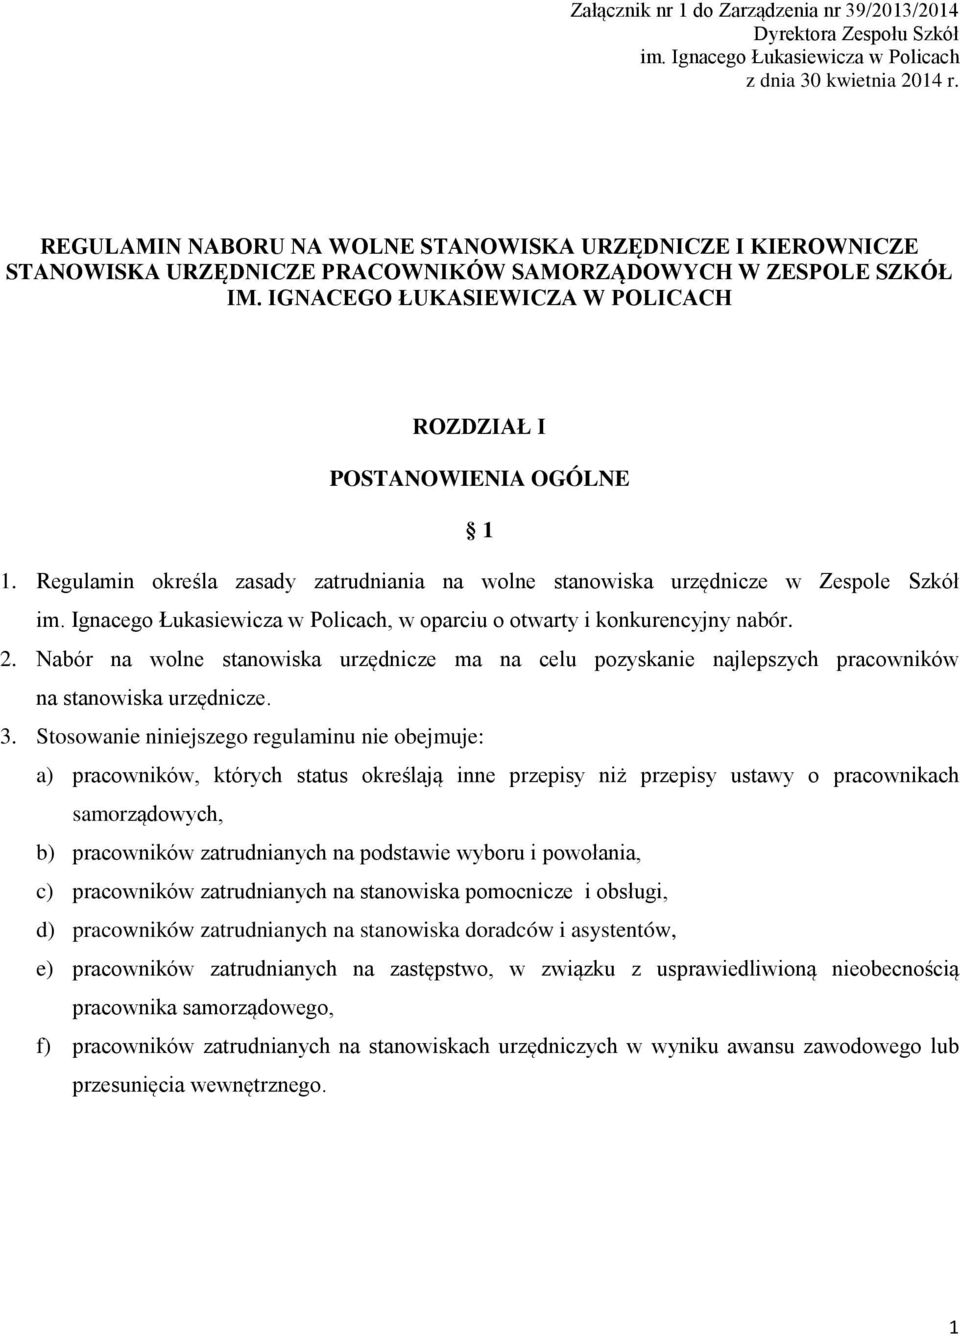 Regulamin określa zasady zatrudniania na wolne stanowiska urzędnicze w Zespole Szkół im. Ignacego Łukasiewicza w Policach, w oparciu o otwarty i konkurencyjny nabór. 2.